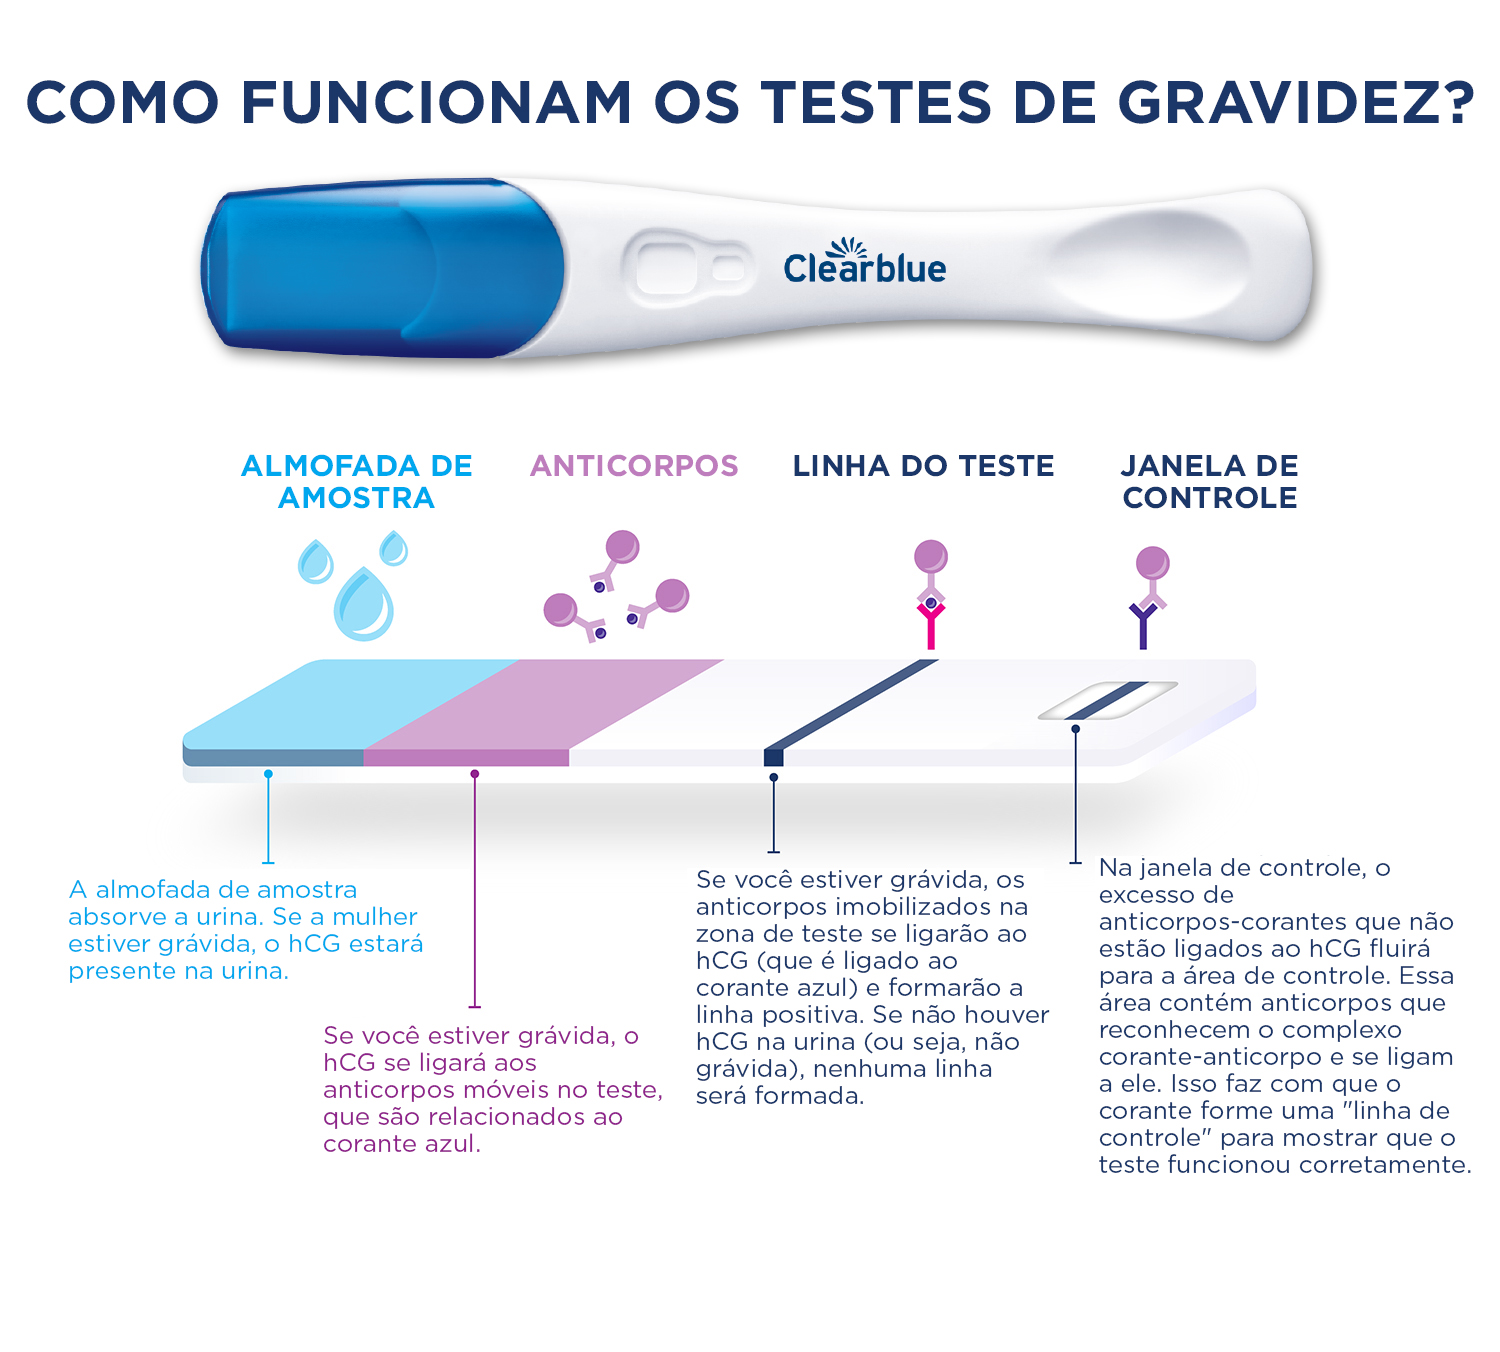 Um teste de gravidez Clearblue digital, acompanhado de uma ilustração mostrando sua seção transversal para demonstrar como funciona um teste de gravidez